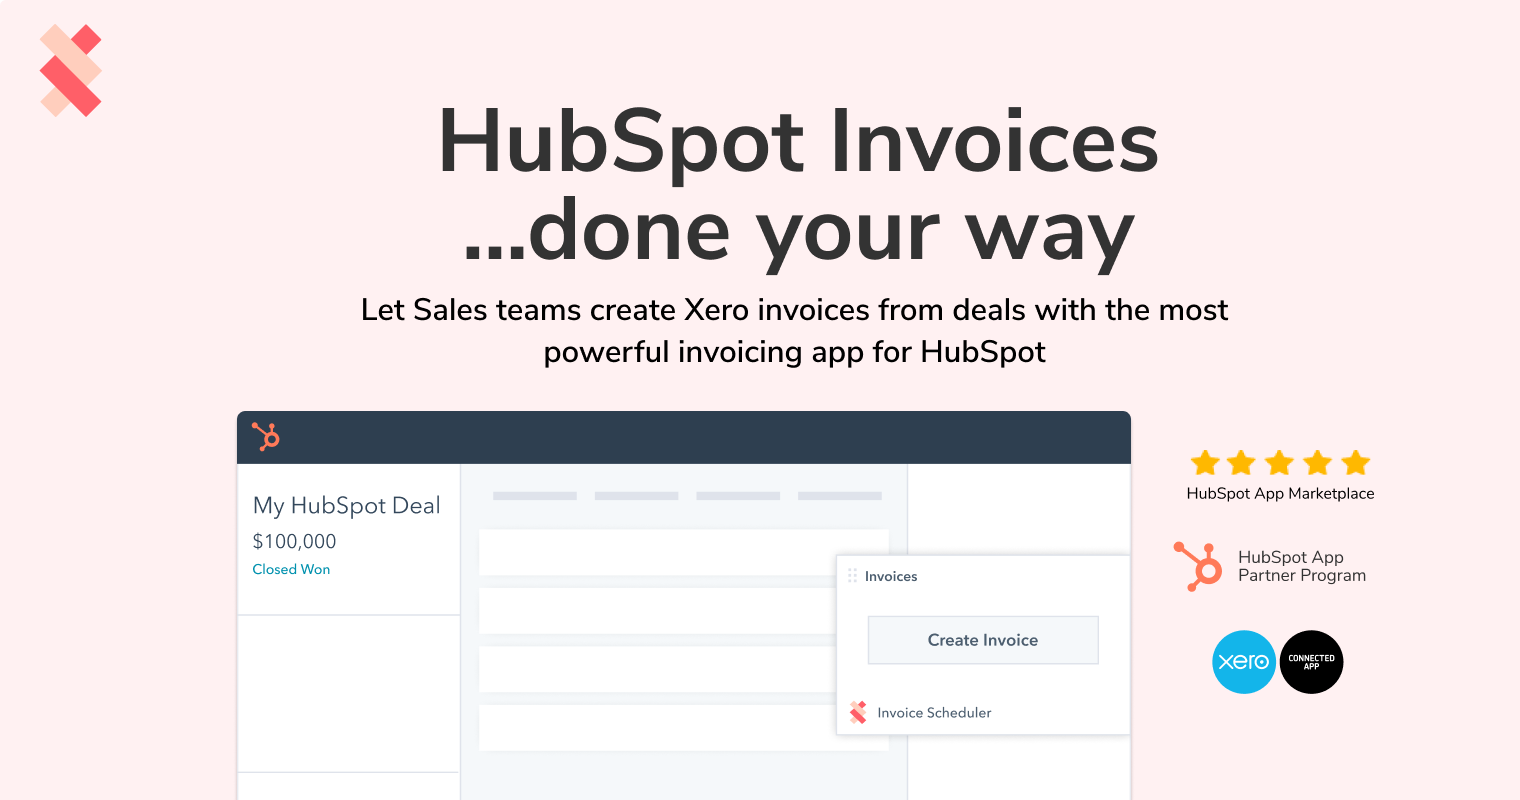 invoice scheduler for hubspot screenshot 1